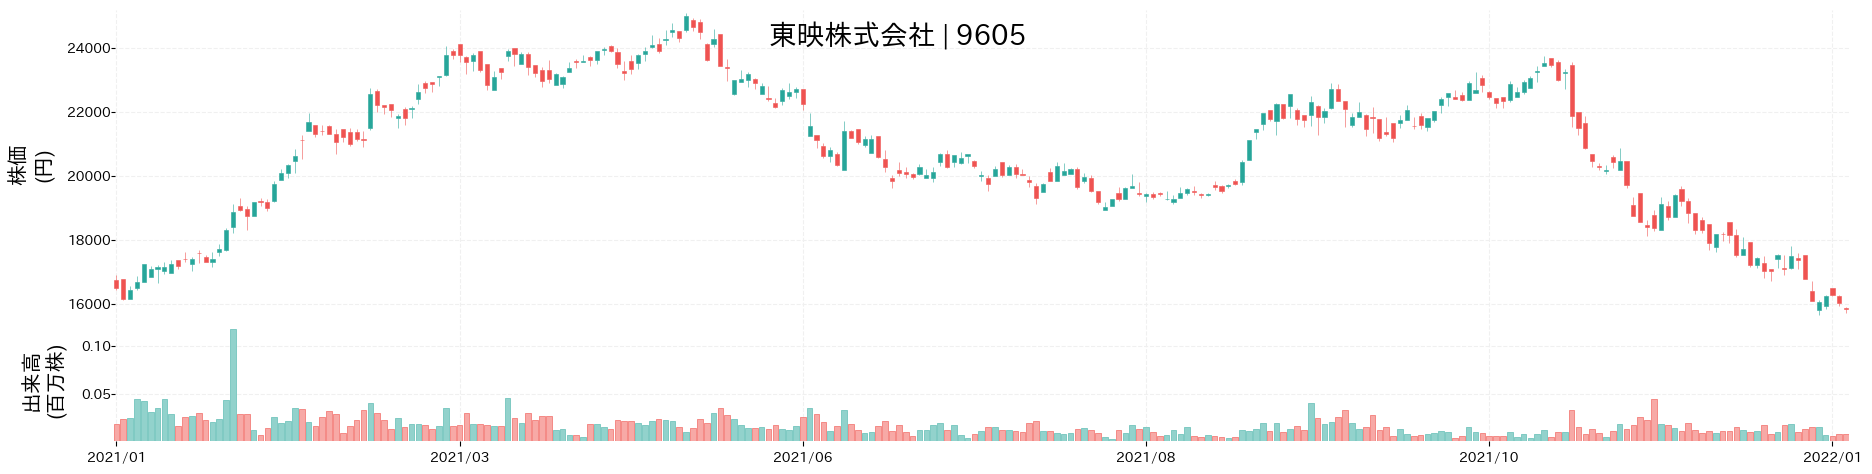 東映の株価推移(2021)